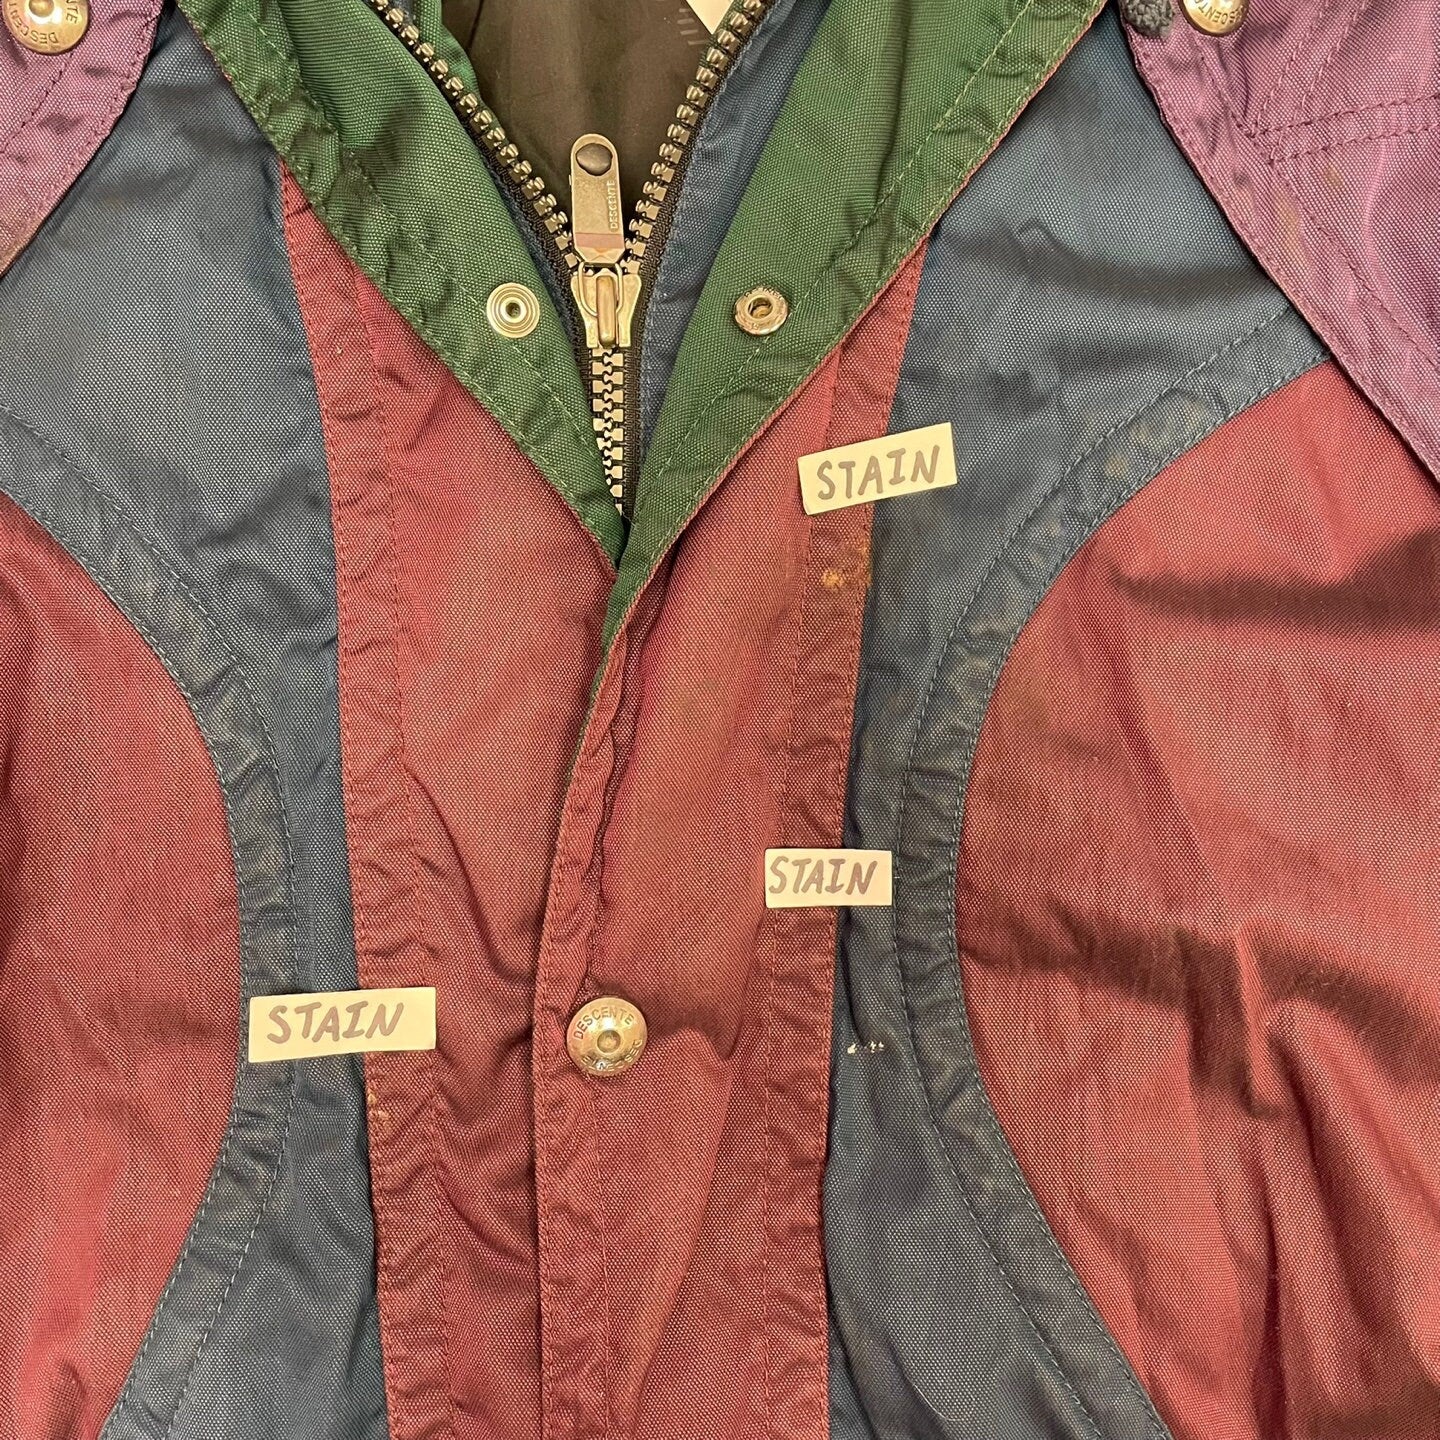 Vintage Descente Colour Block Puffer Jacket with Embroidered Detailing | Vintage Bomber Jacket | Vintage Descente | Size L | SKU M-1844